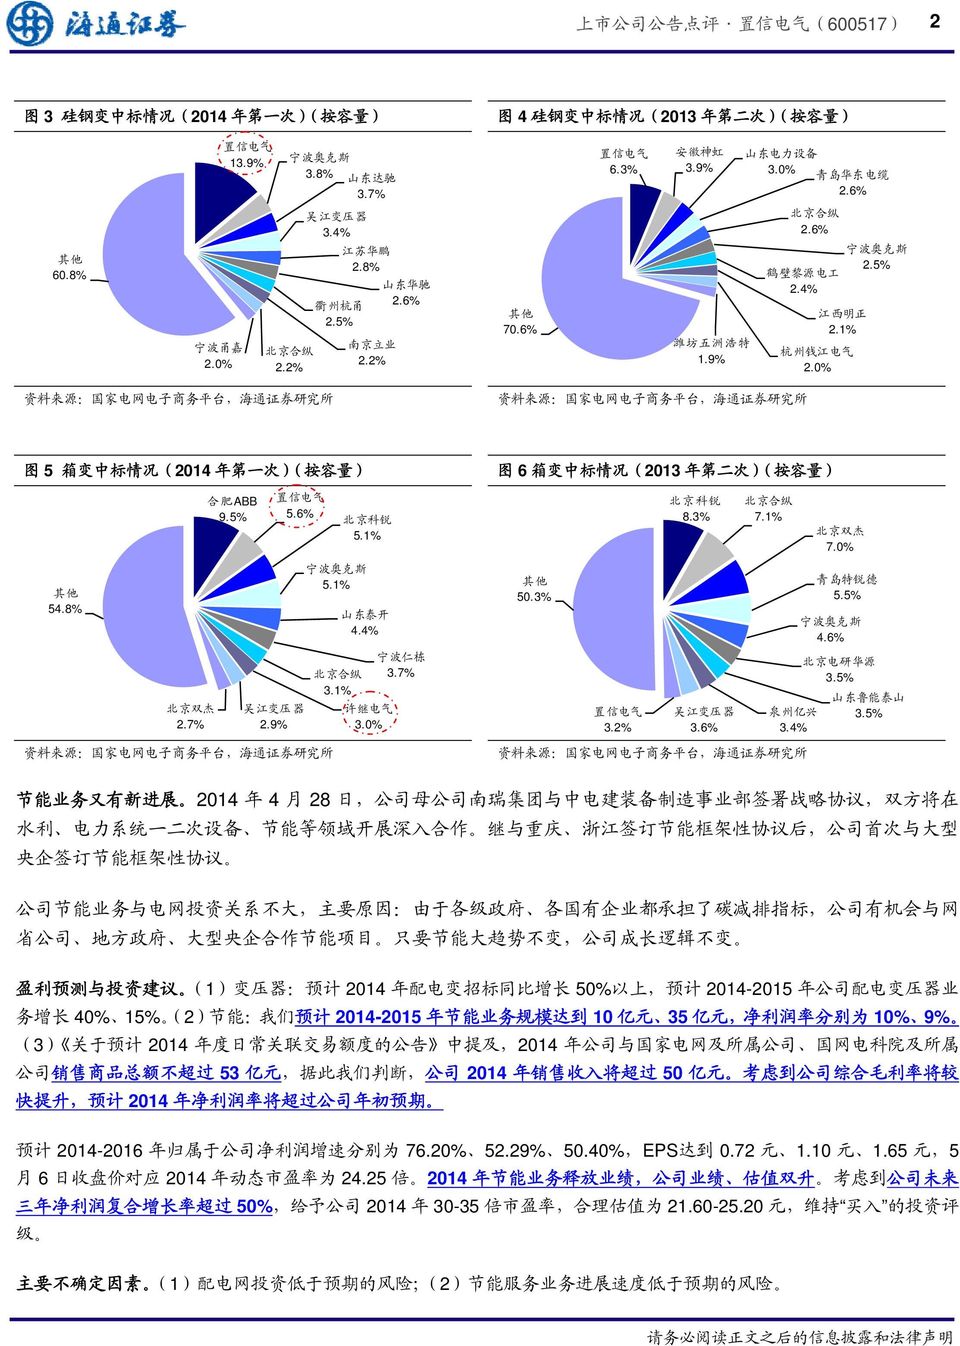 5% 图 5 箱 变 中 标 情 况 (2014 年 第 一 次 )( 按 容 量 ) 图 6 箱 变 中 标 情 况 (2013 年 第 二 次 )( 按 容 量 ) 合 肥 ABB 9.5% 5.6% 5.1% 8.3% 7.1% 北 京 双 杰 7.0% 54.8% 5.1% 山 东 泰 开 4.4% 50.3% 青 岛 特 锐 德 5.5% 4.6% 北 京 双 杰 2.